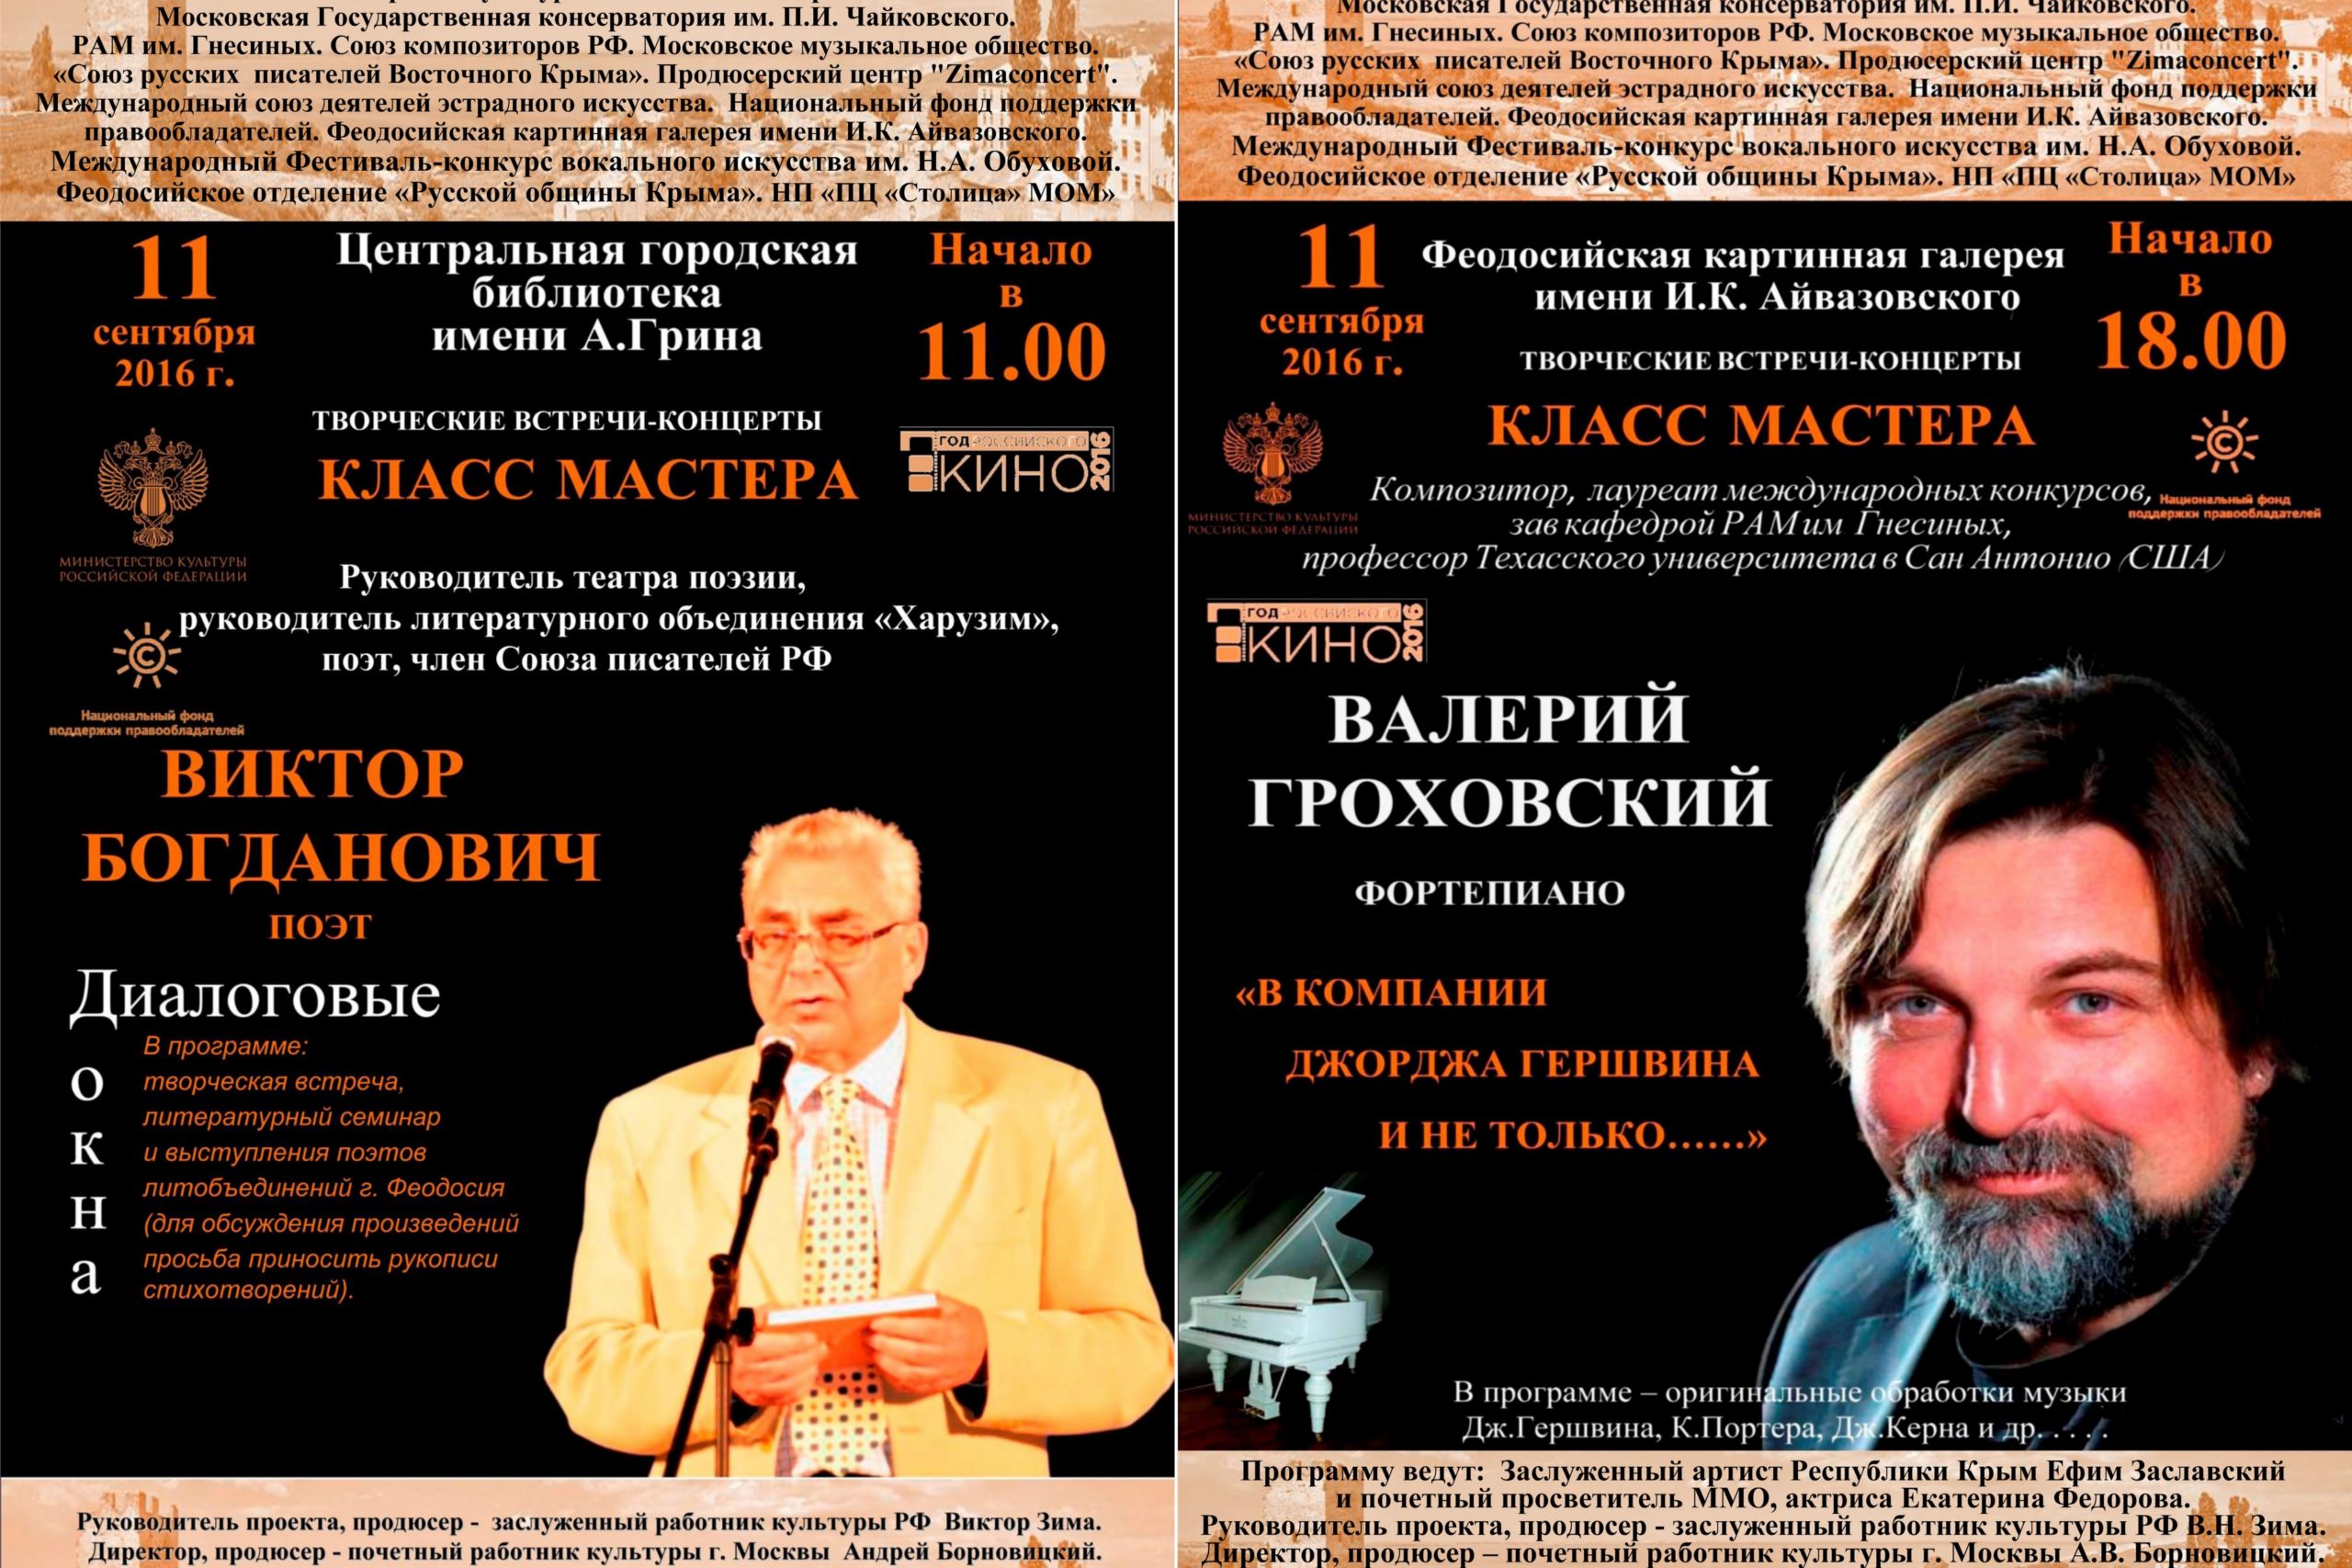 НФПП поддержит творческие встречи «Класс Мастера» в Крыму